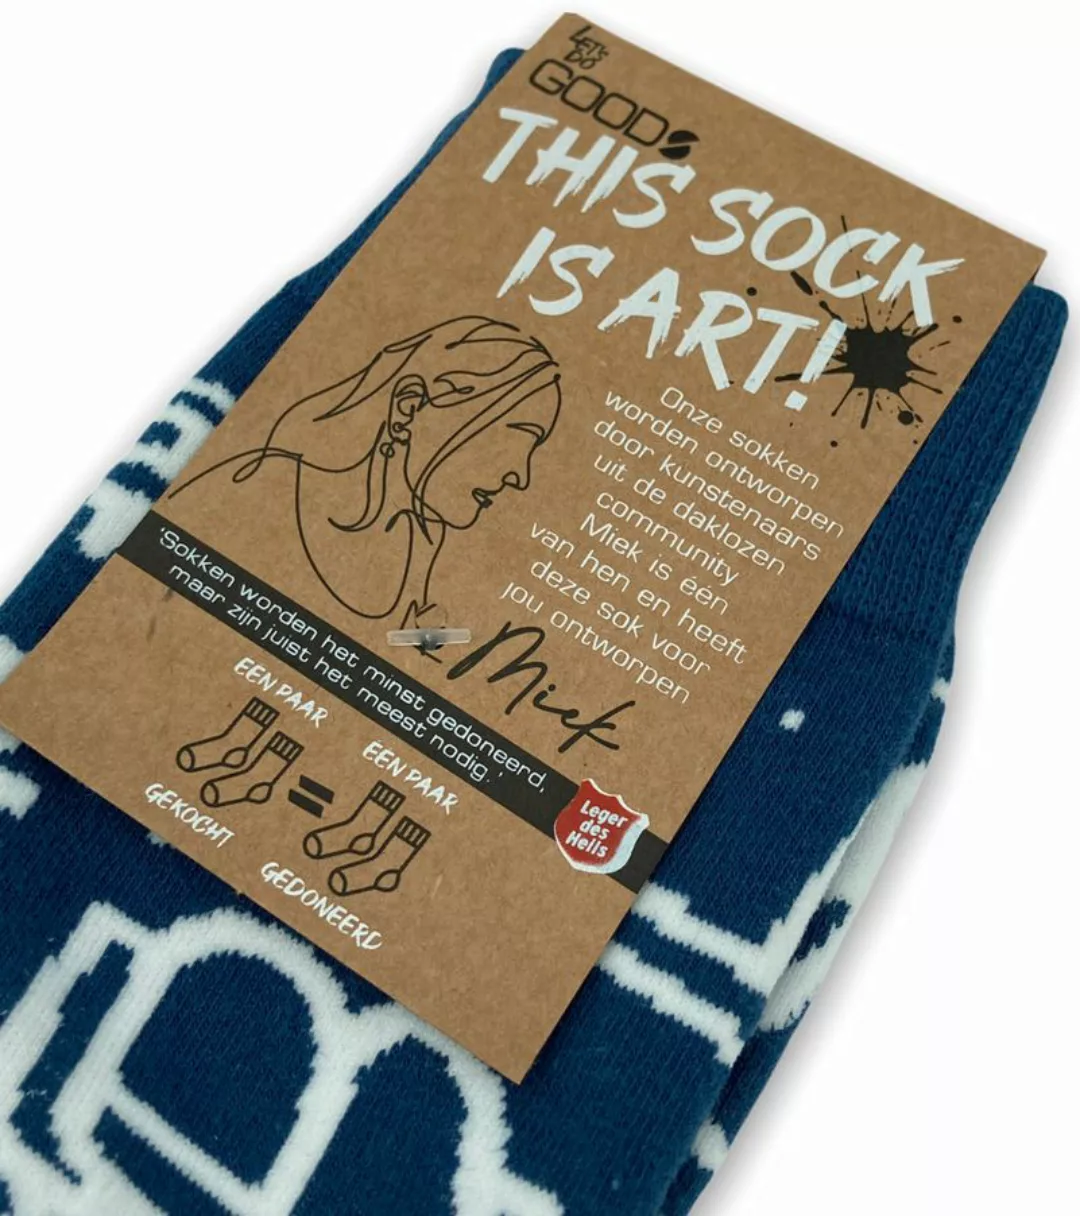 Let's Do Good Socken Miek - Größe 41-46 günstig online kaufen